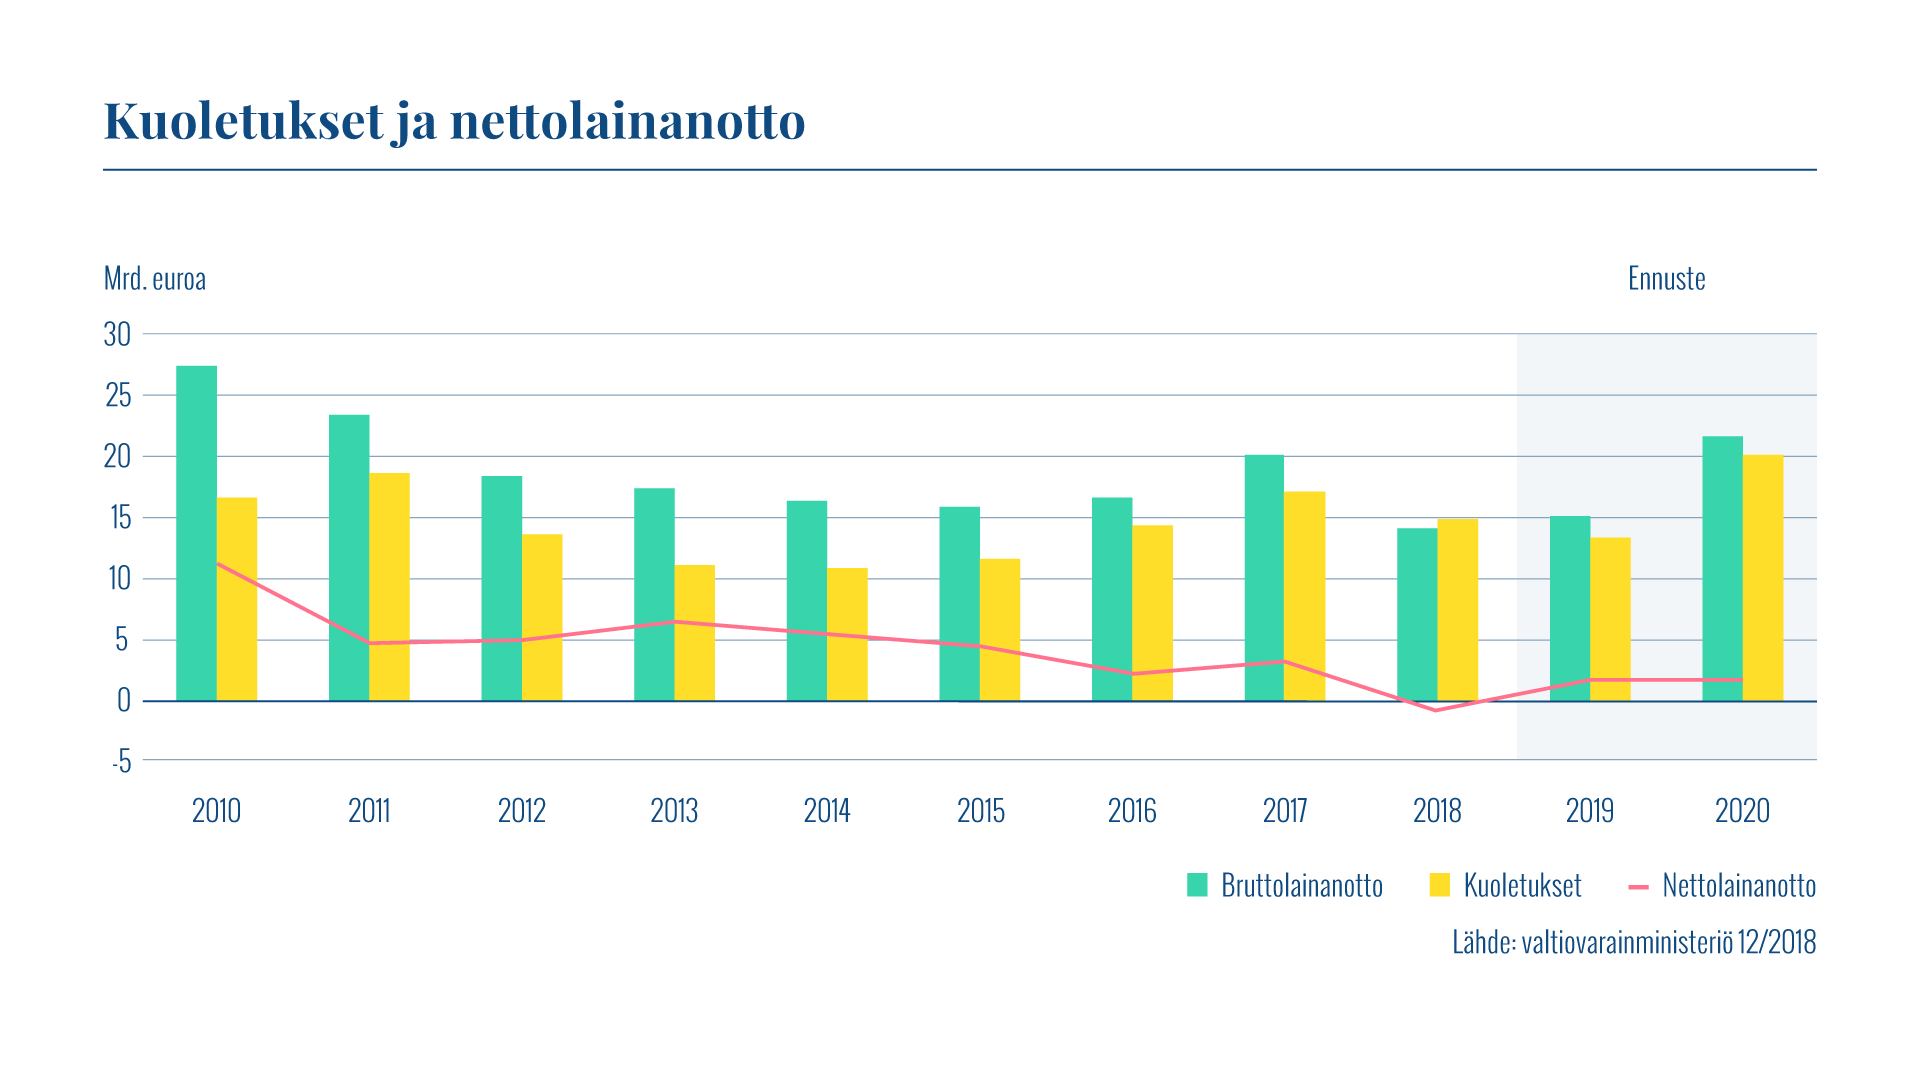 Kaaviossa esitetään vuosittainen bruttolainanotto, kuoletukset ja nettolainanotto vuosina 2010–2020. Kuoletuksia oli 15 miljardin euron edestä ja nettolainanoton määrä oli -0,9 miljardia euroa vuonna 2018.